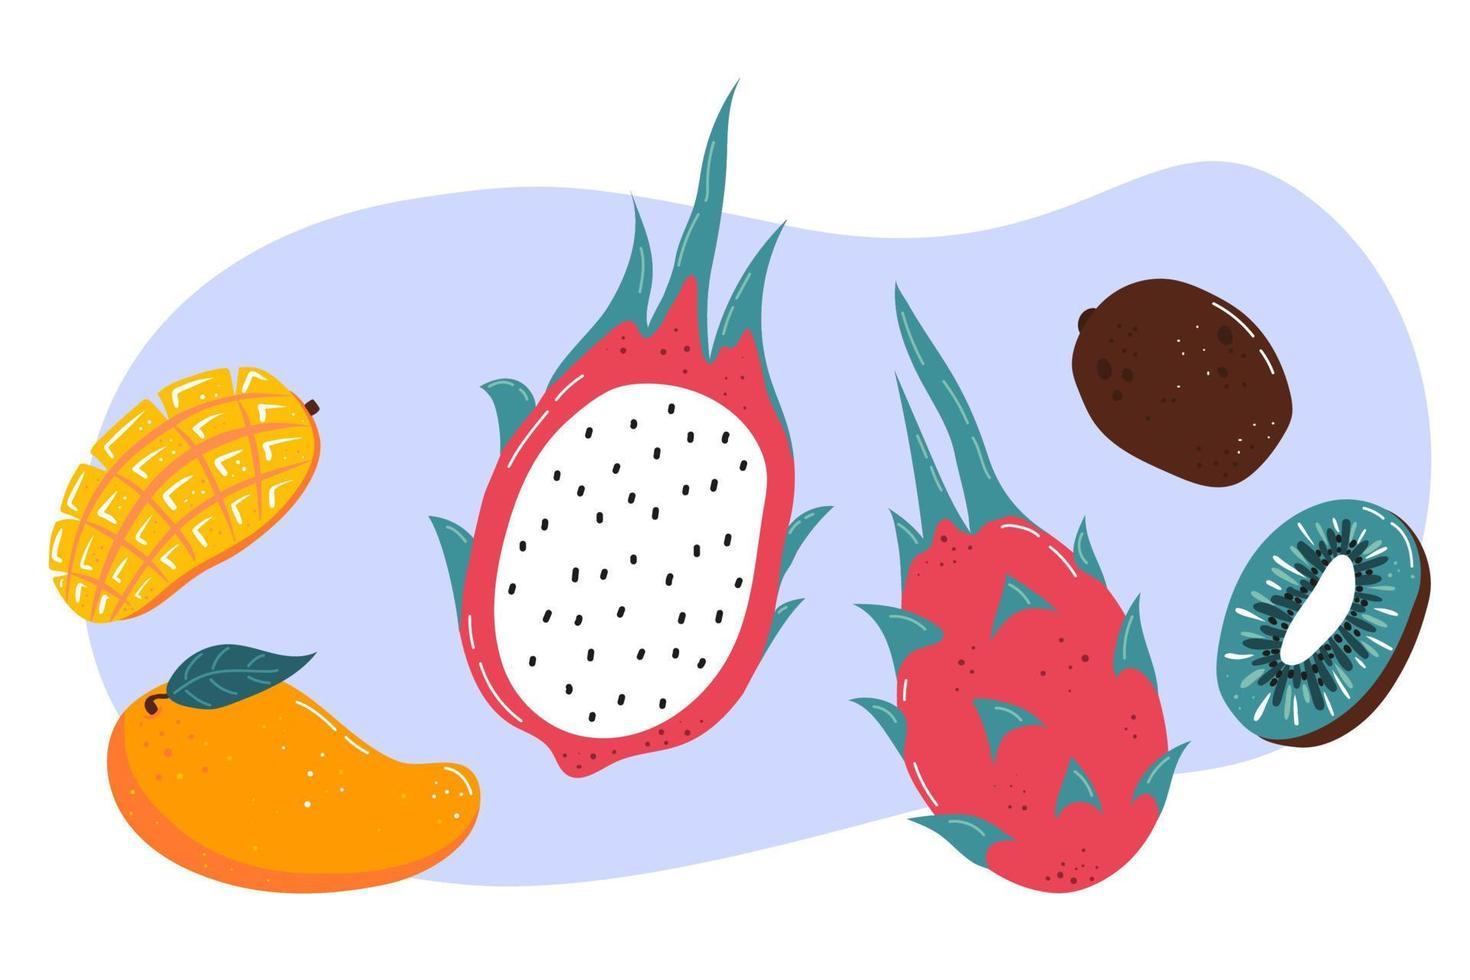 fruits exotiques frais - mangue, fruit du dragon, kiwi. alimentation équilibrée. illustration vectorielle vecteur